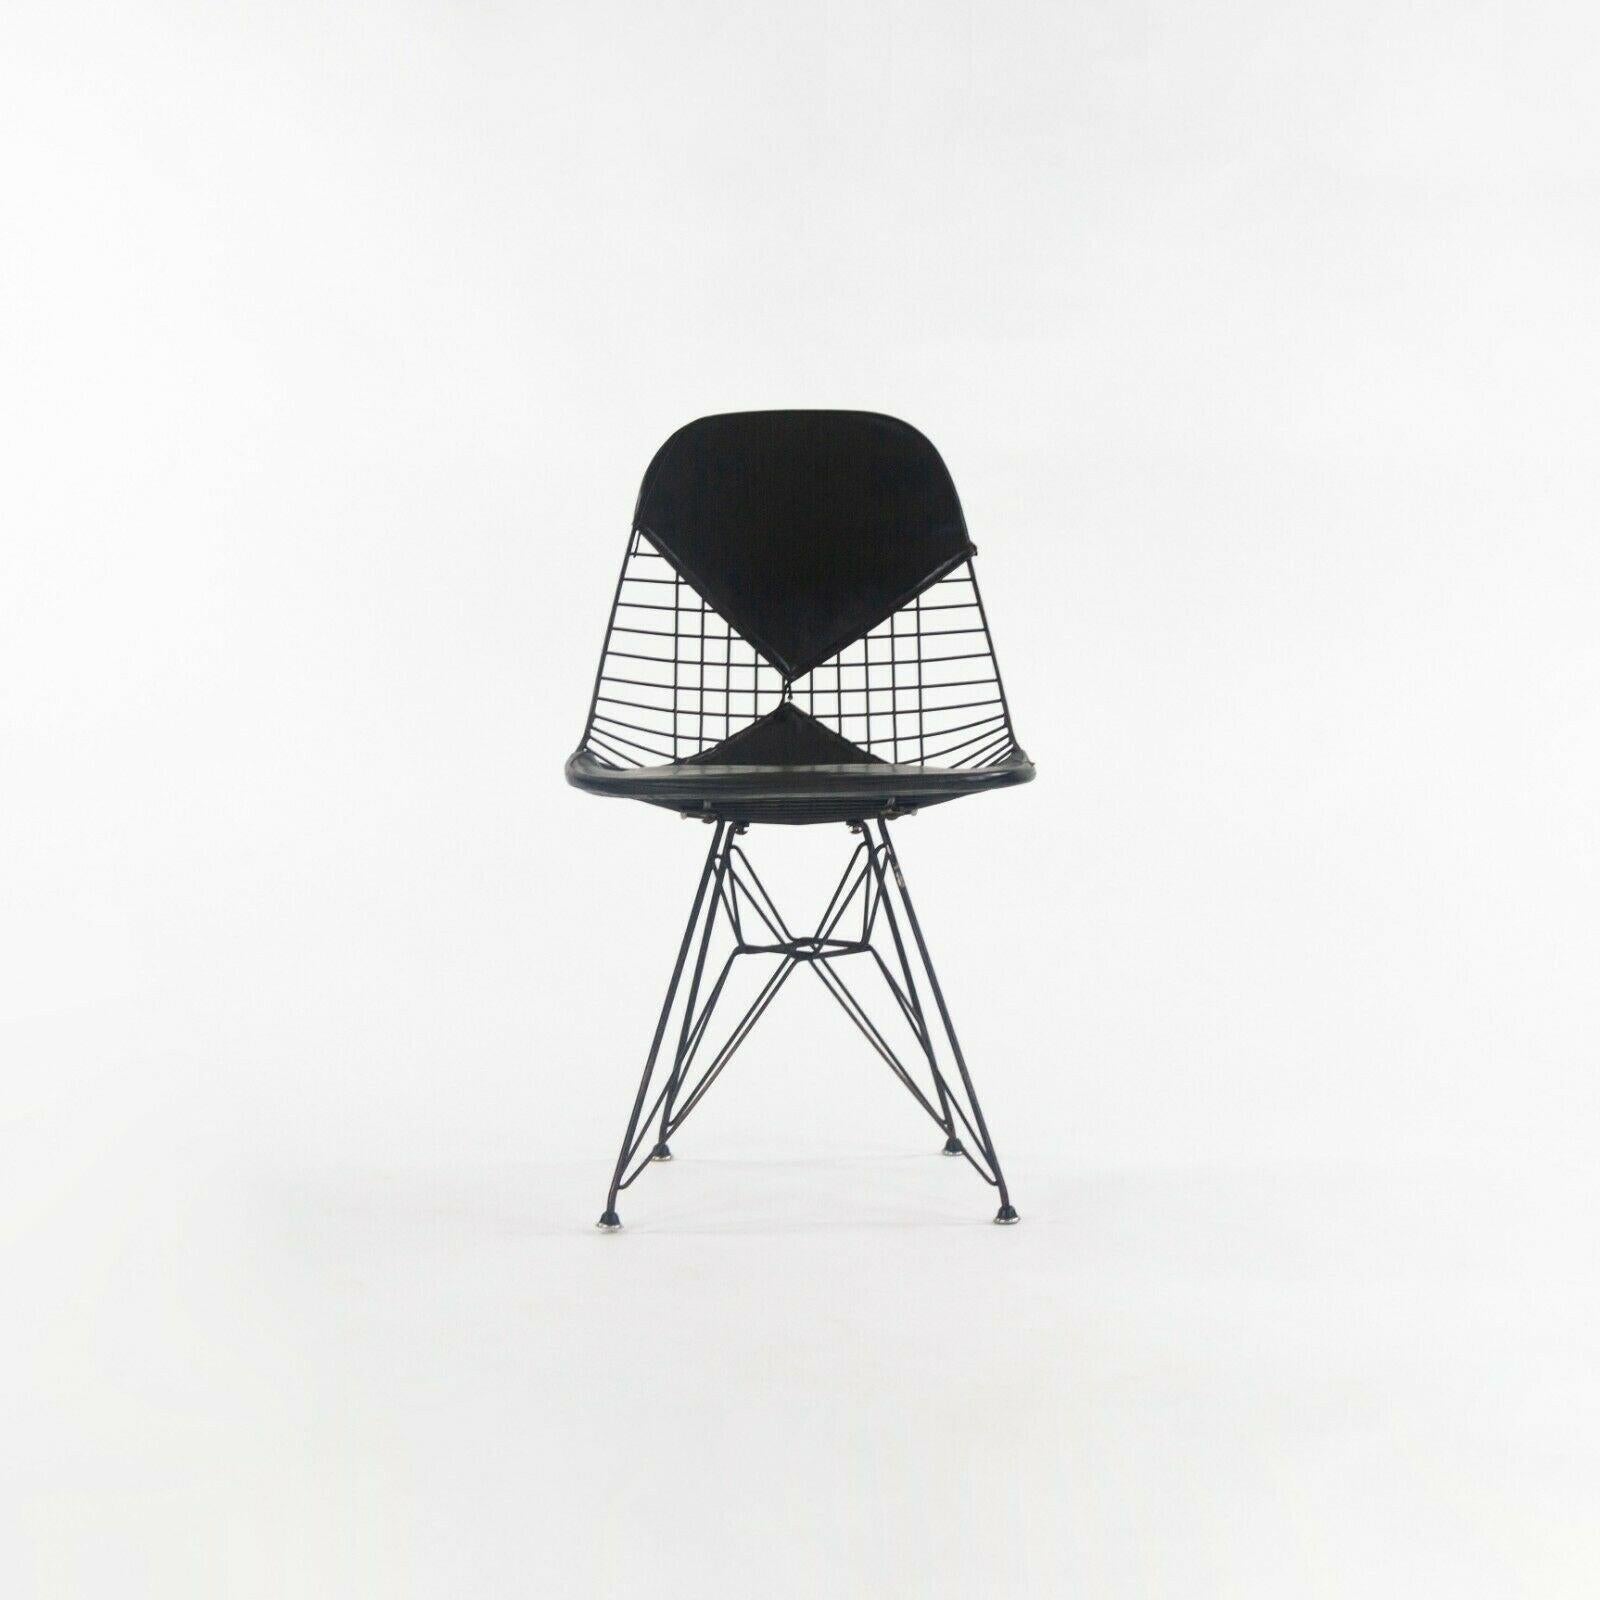 Nous vous proposons à la vente un ensemble de six chaises de salle à manger en fil de fer Eames DKR-2 avec des pad noirs, produites vers 1957. Le DKR a été conçu par Charles et Ray Eames et produit par Herman Miller. Les bases en fil noir et les